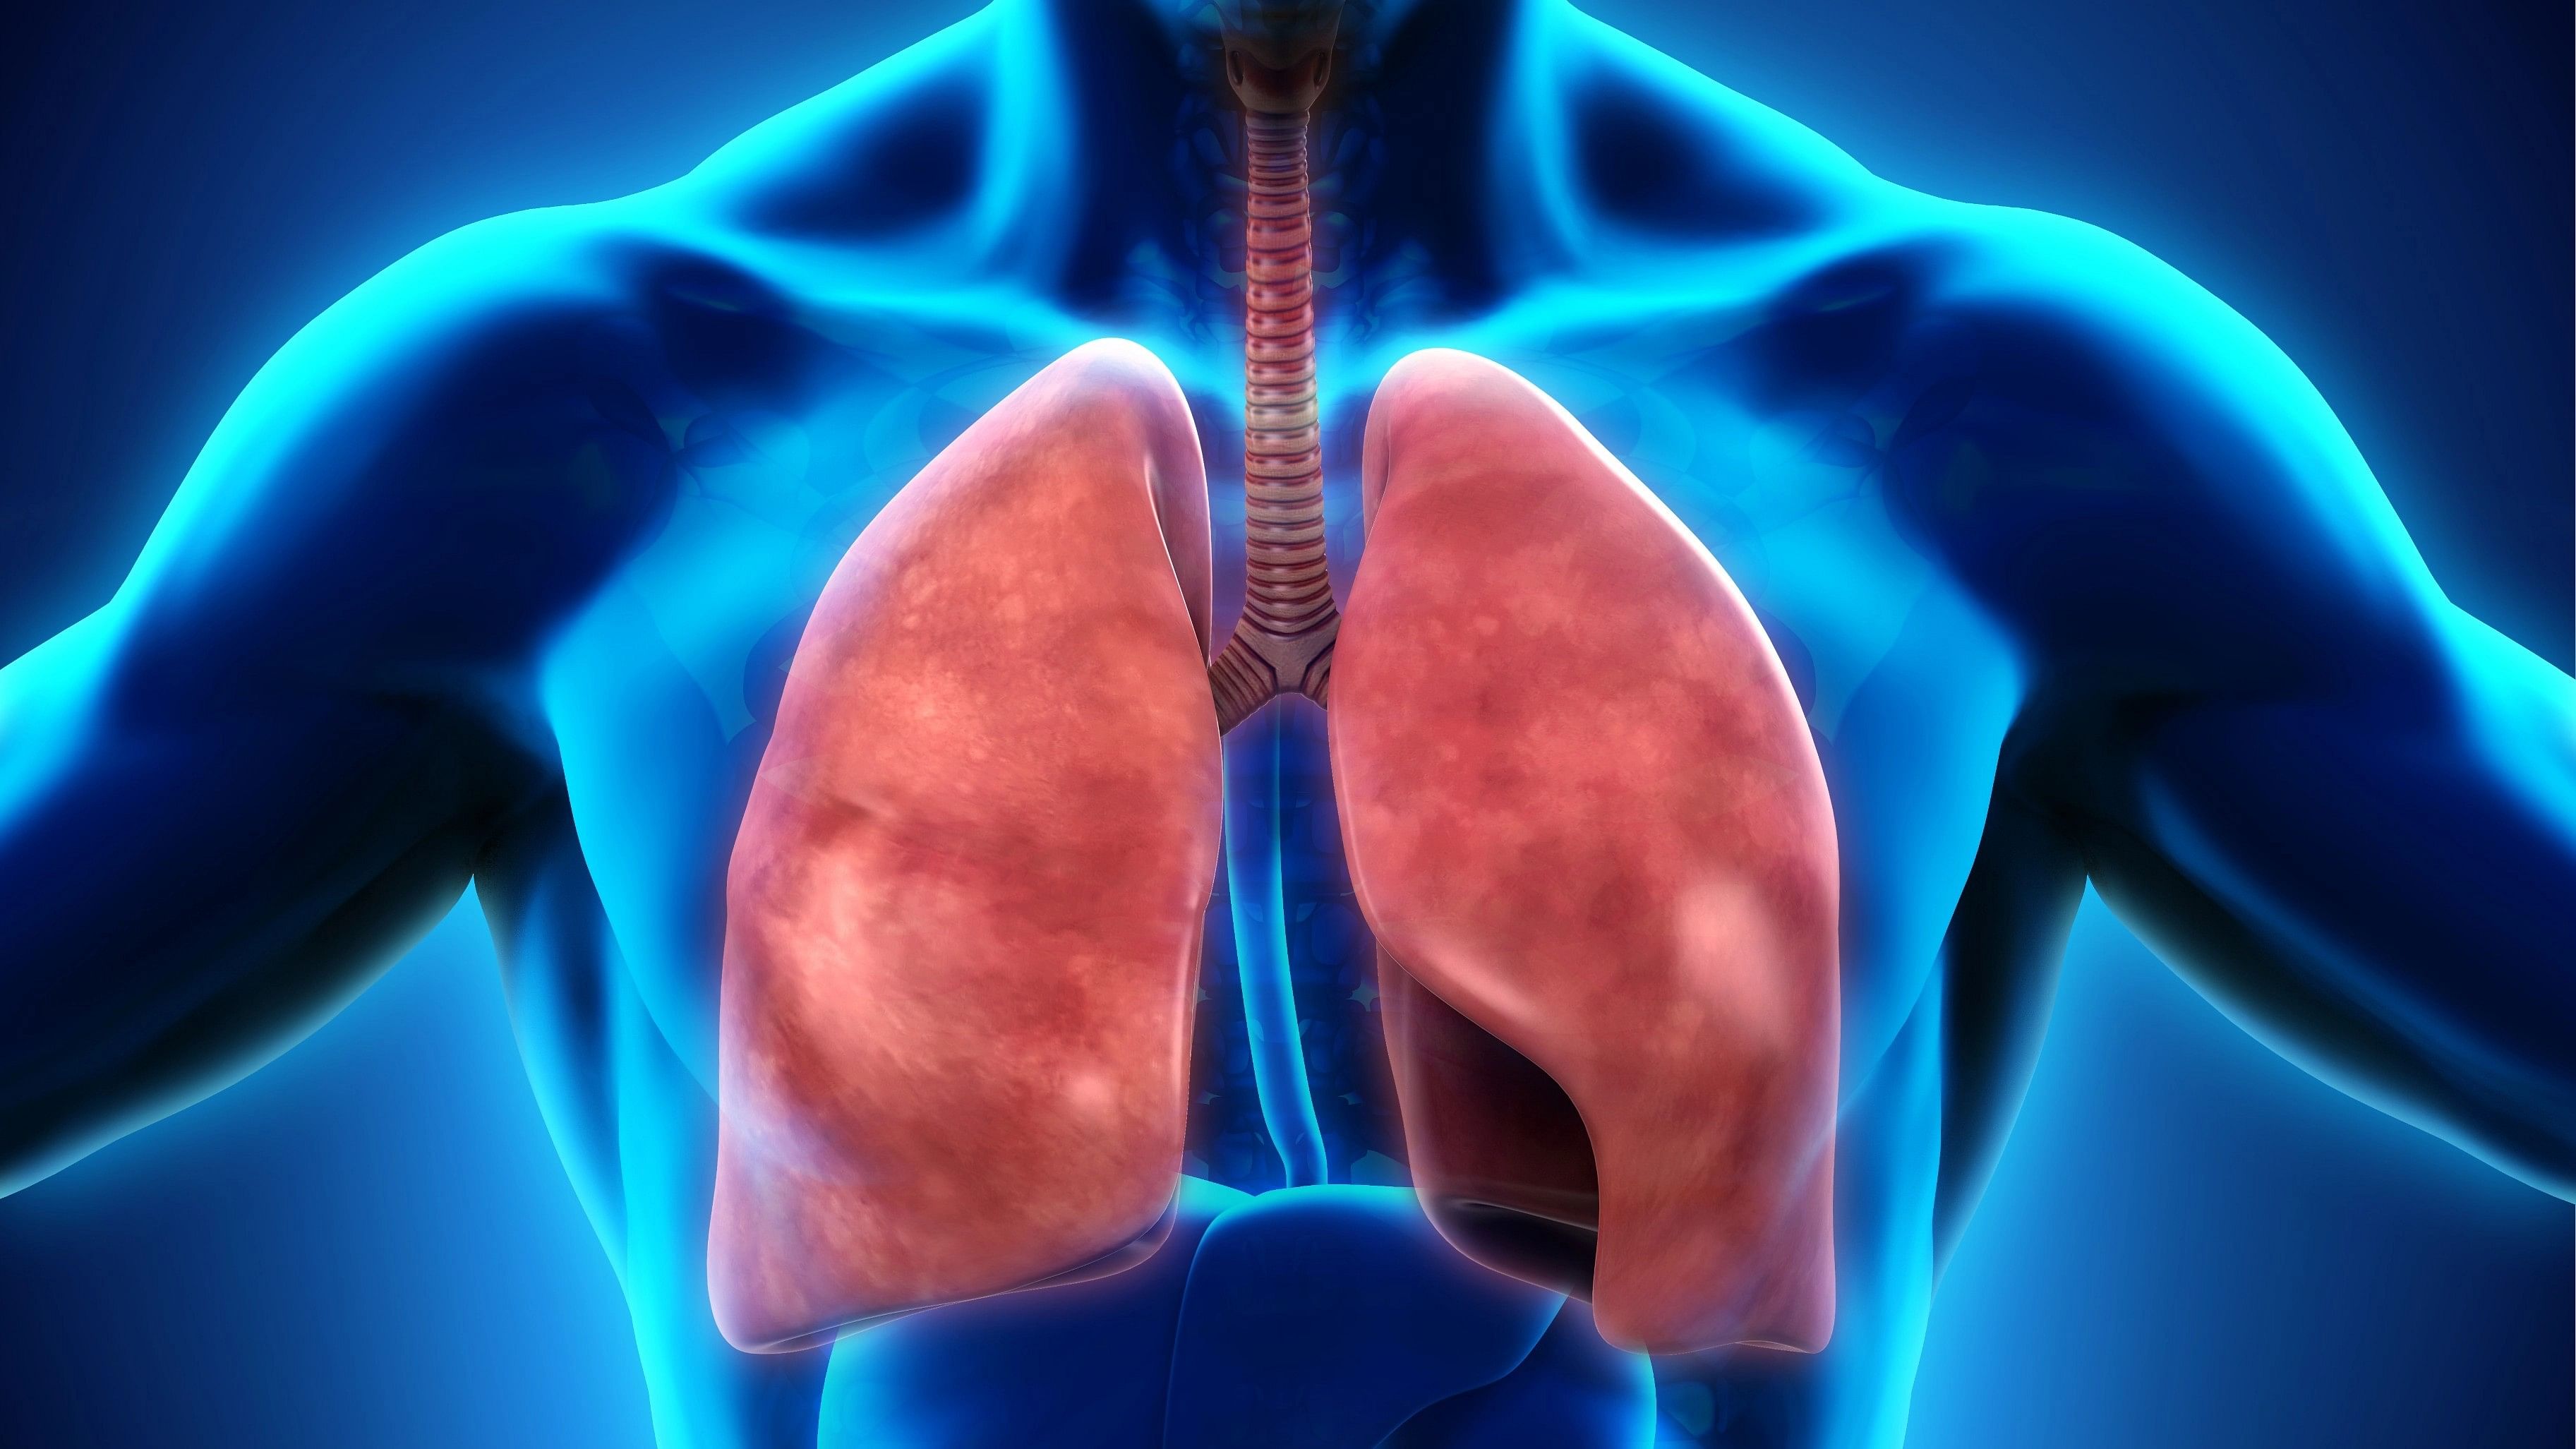 <div class="paragraphs"><p>Representative image of lungs.</p></div>